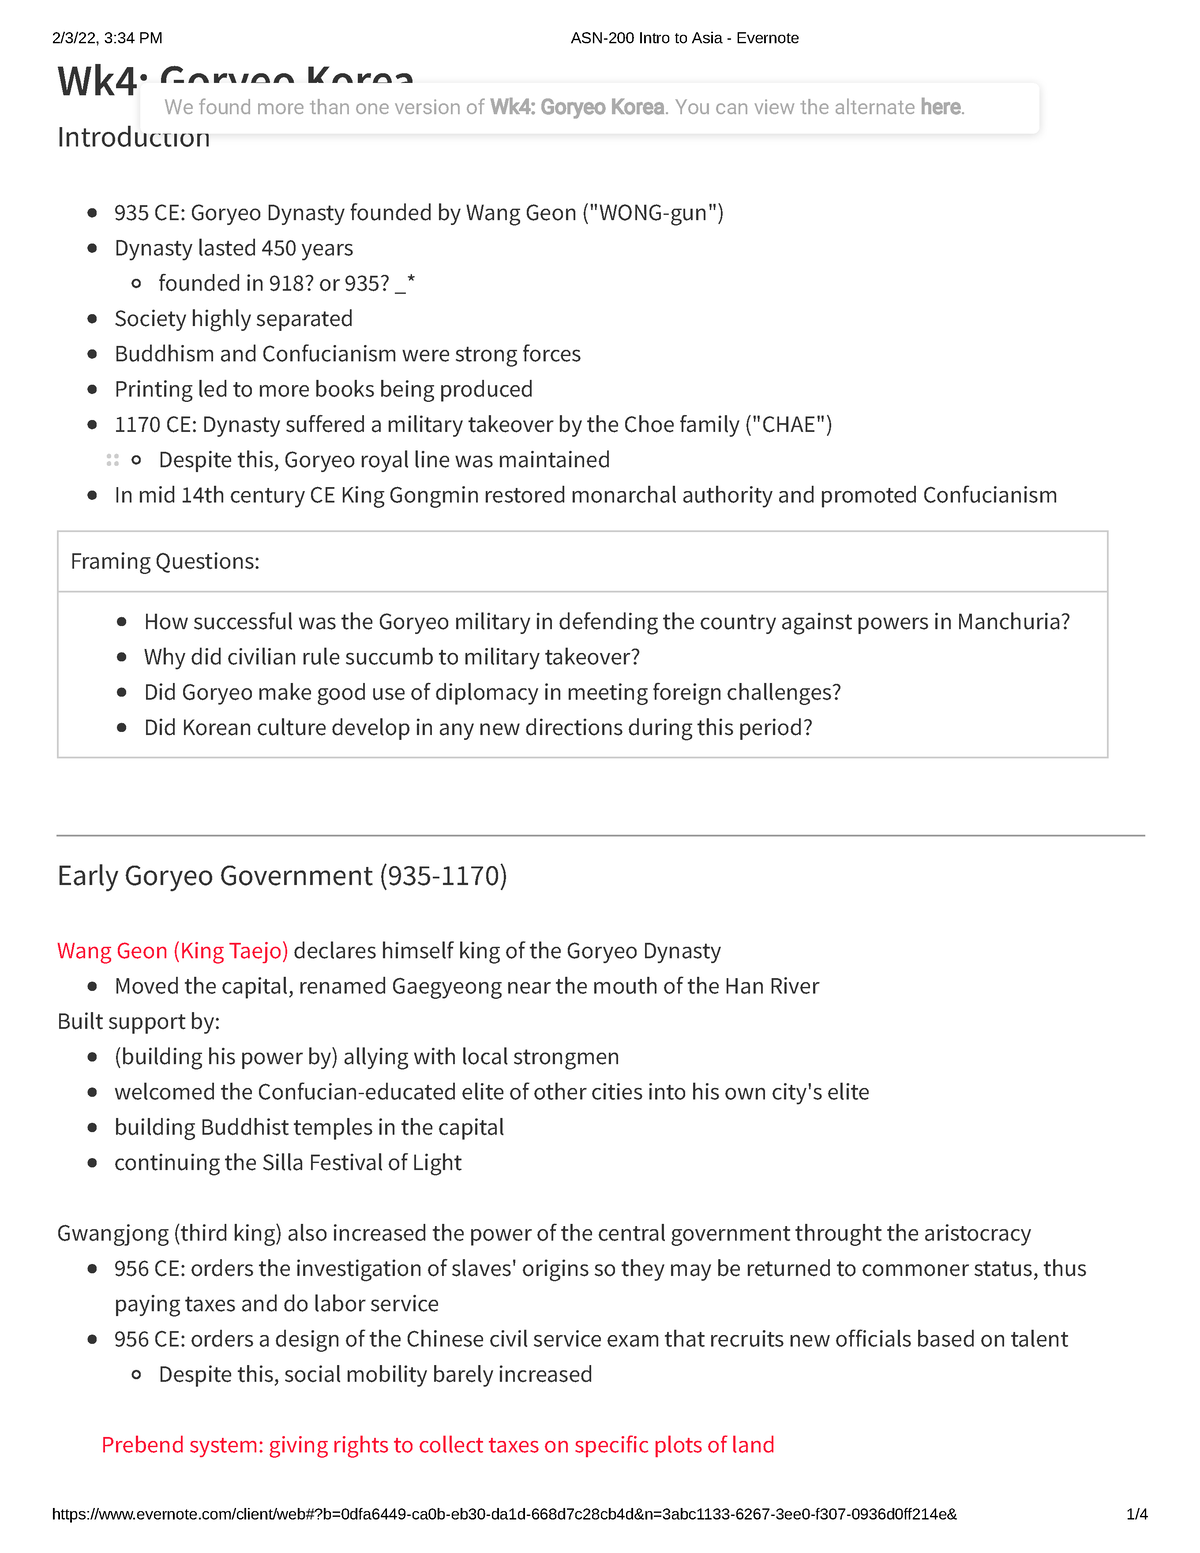 ASN-200 -Week 4 Goryeo Korea PDF notes - Wk4: Goryeo Korea Introduction ...